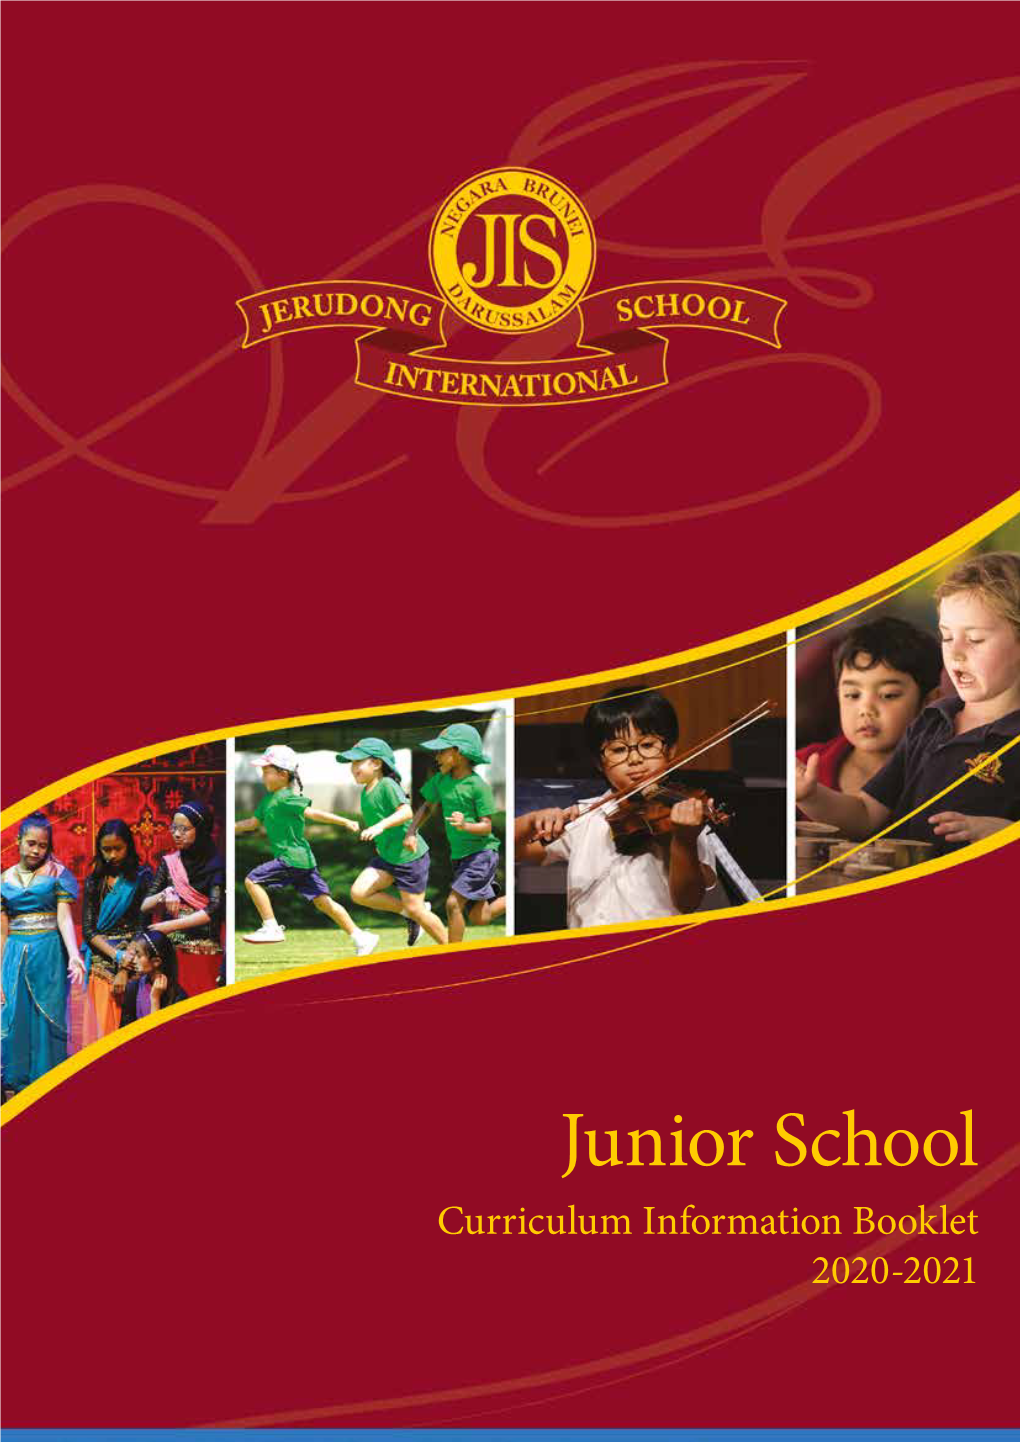 Junior School Curriculum Information Booklet 2020-2021